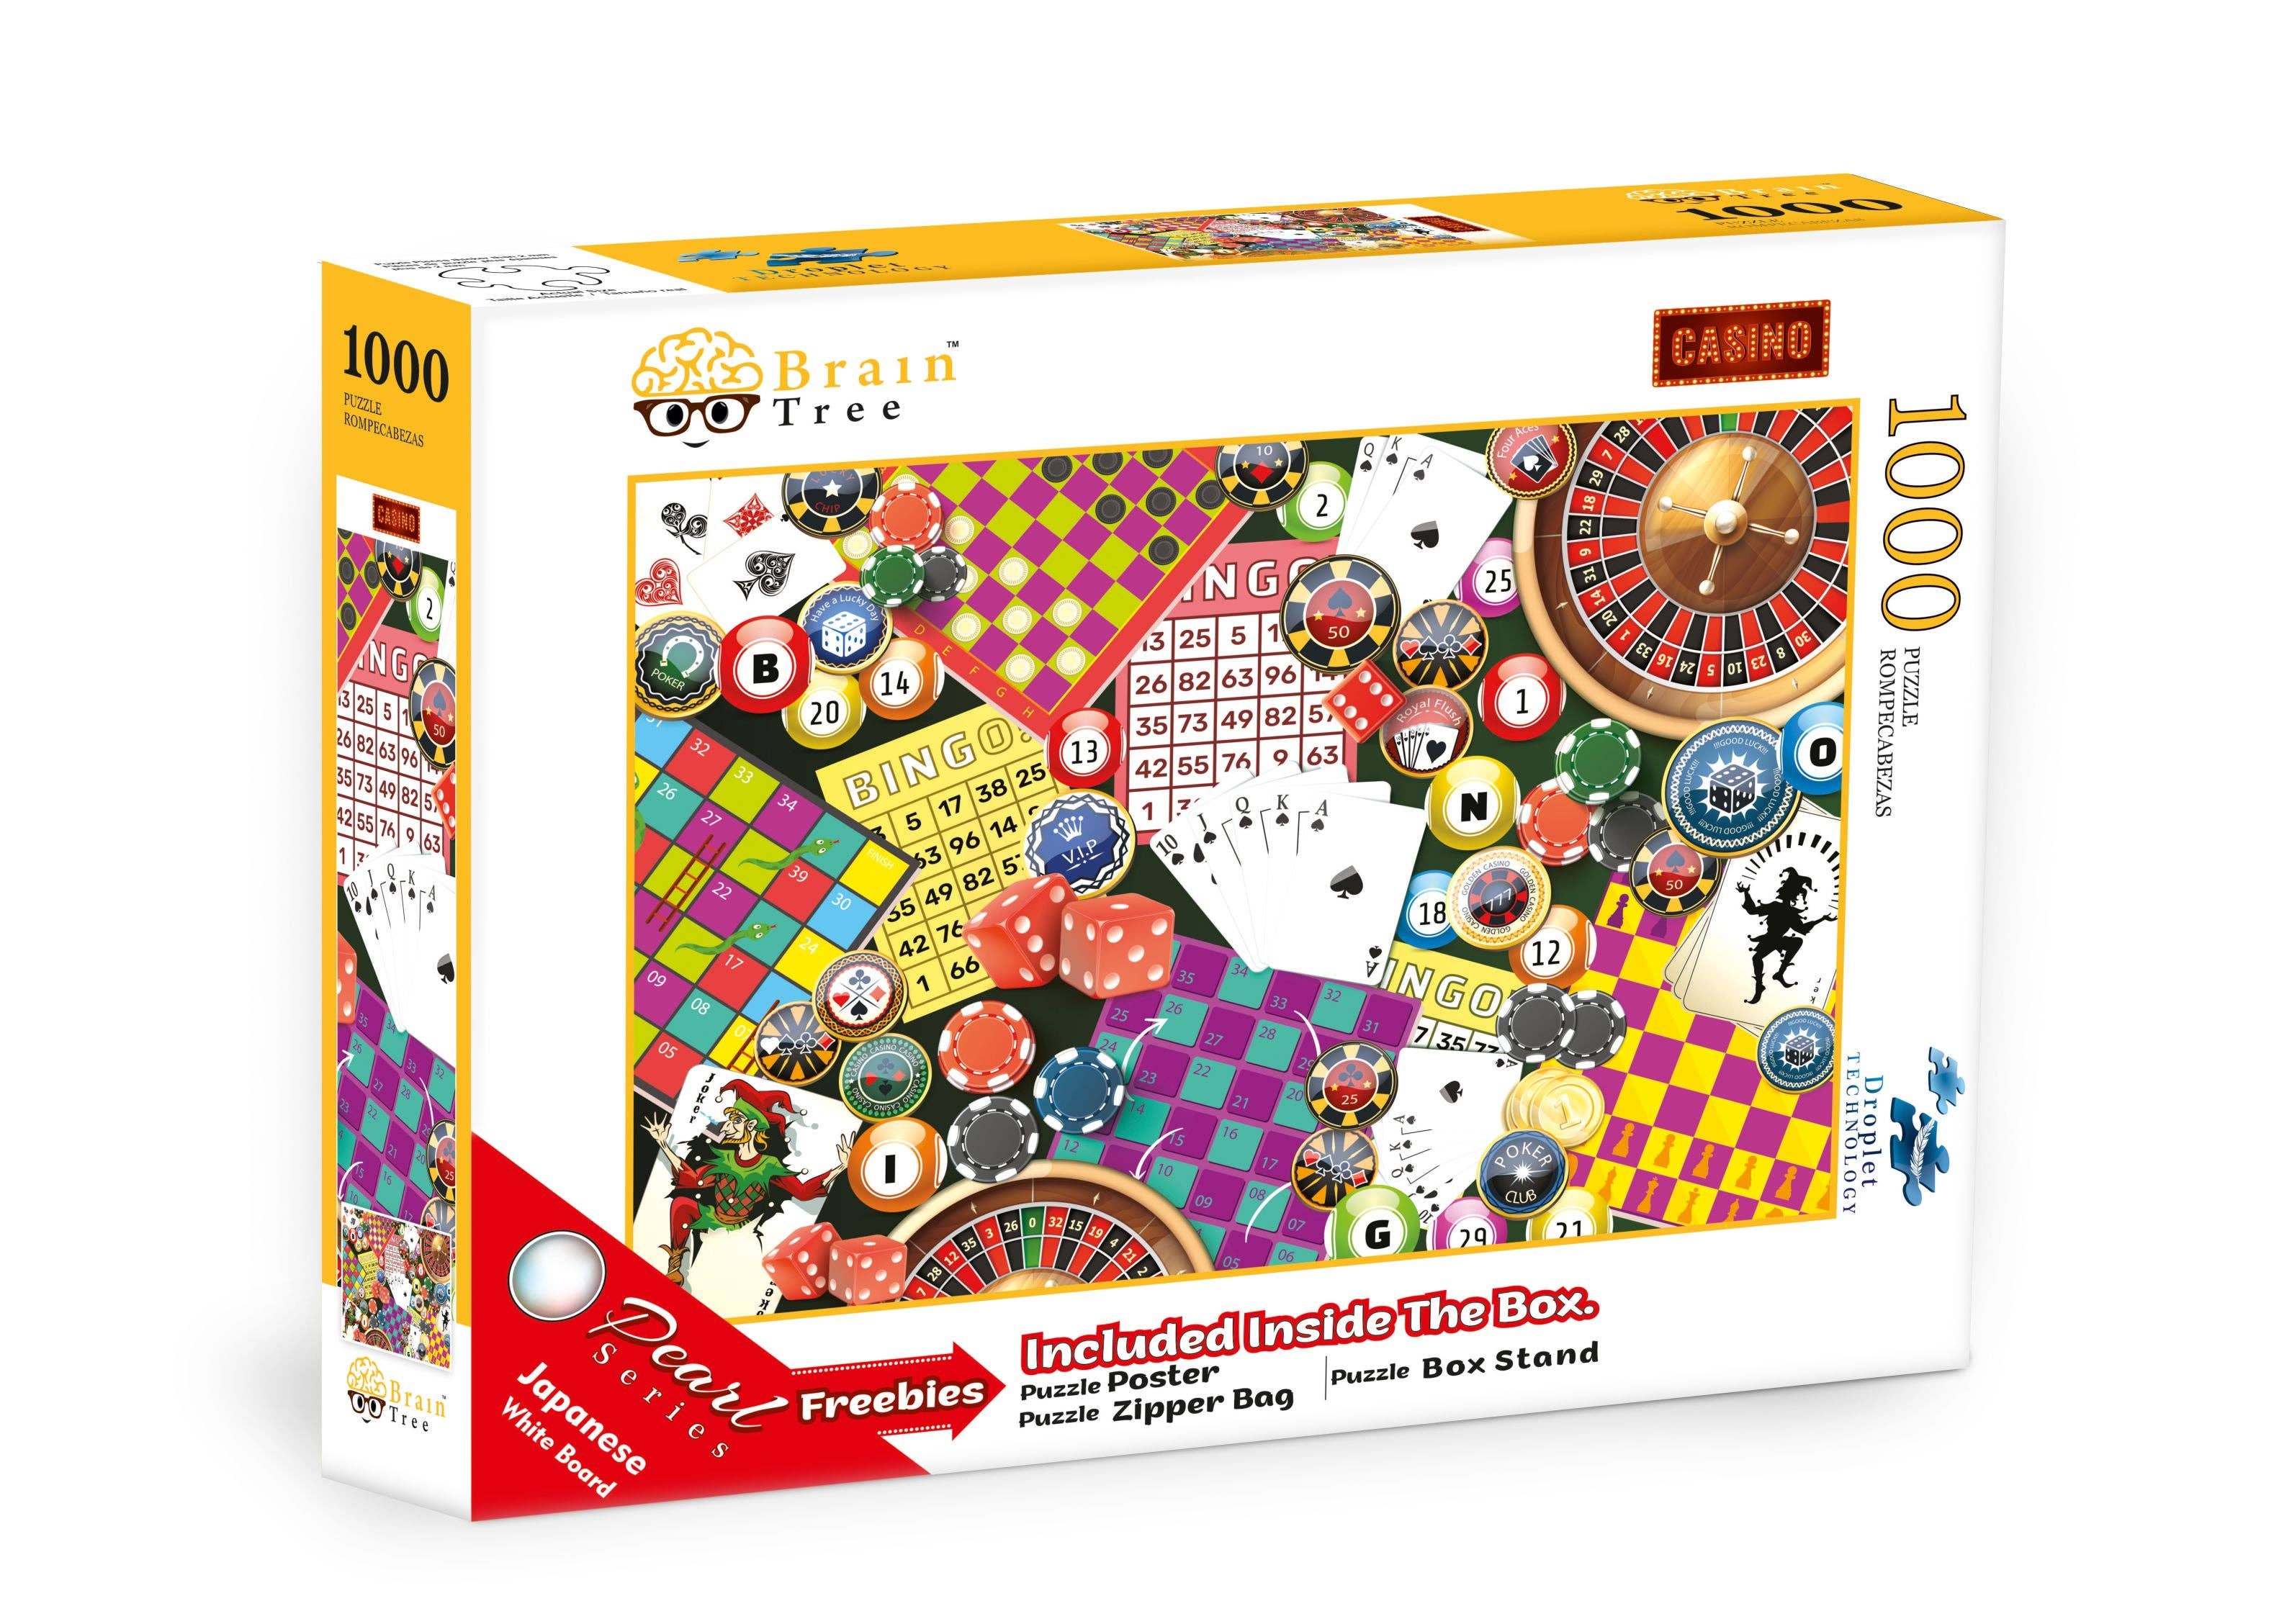 Casino 1000 Piece Jigsaw Puzzle